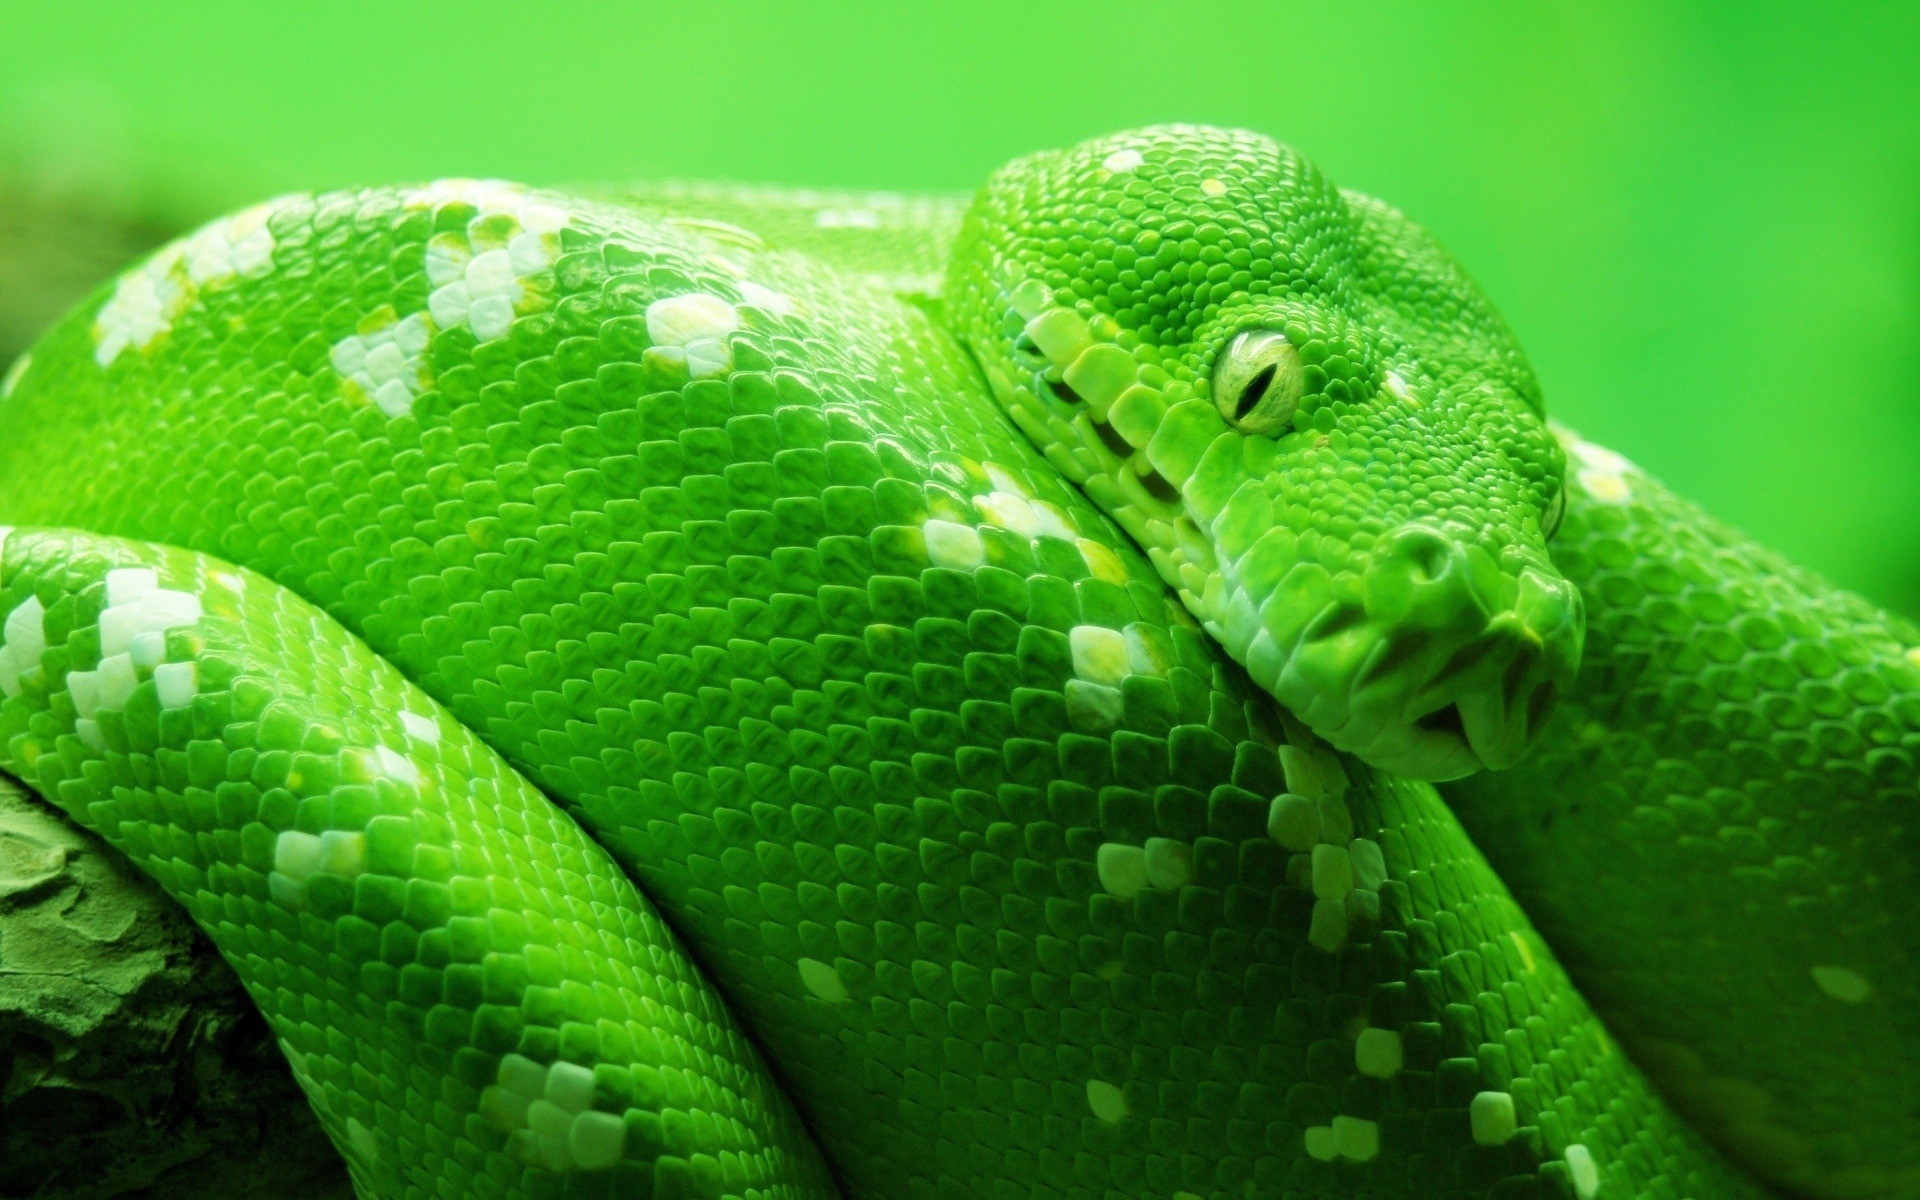 全身绿色的蛇图片